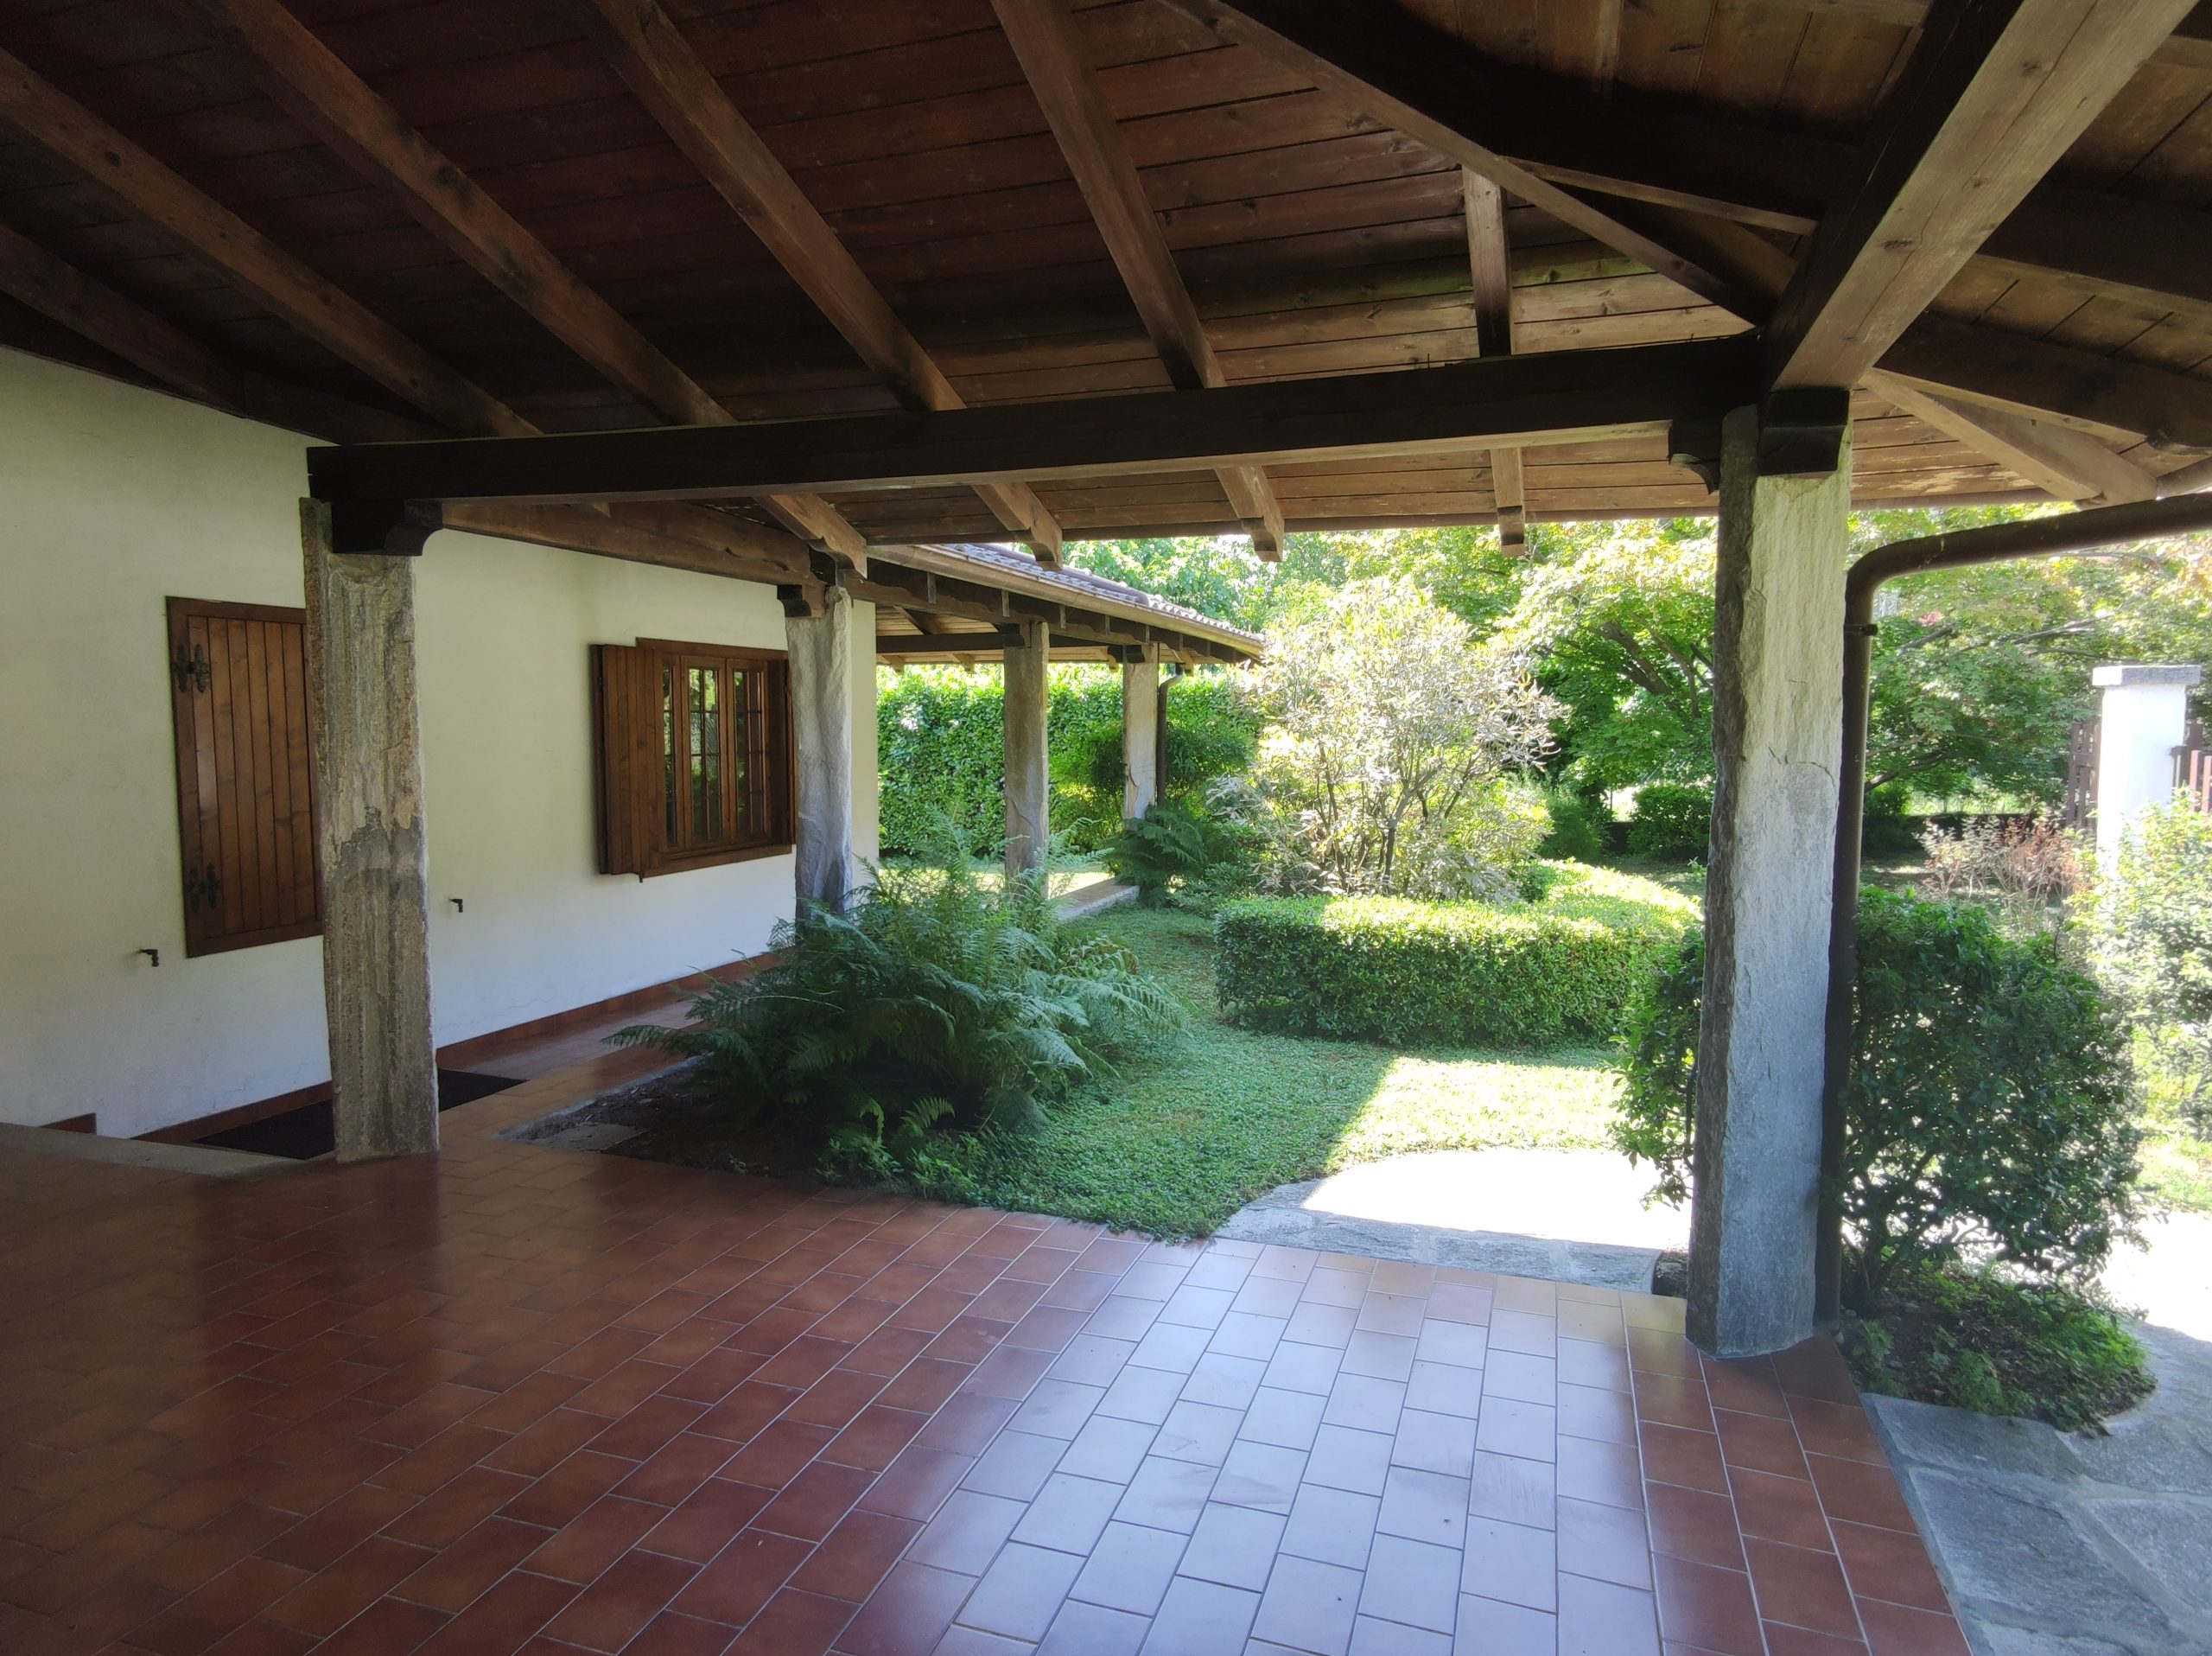 Foto Villa singola con ampio giardino, Mergozzo